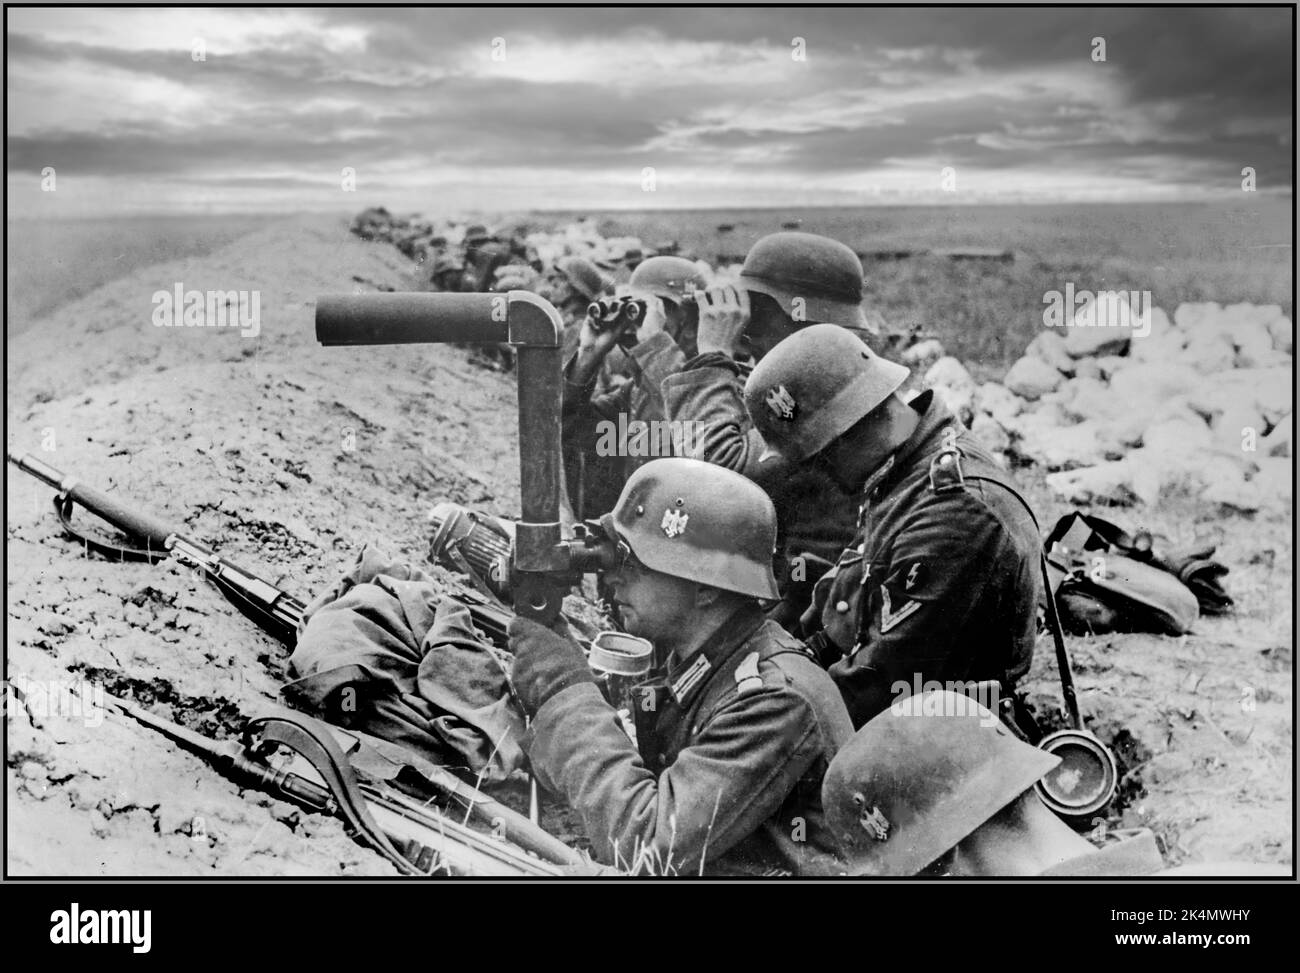 OPERATION BARBAROSSA WW2 Deutsche Infanterie in den Schützengräben der Ostfront beobachtet einer der Soldaten die sowjetischen Positionen mit SF14ZGi Ferngläsern. Eines der einzigartigsten optischen Schlachtfeld-Systeme aus dem Zweiten Weltkrieg, das von Leitz, dem Hersteller der Leica-Kamera, entwickelt wurde. Dieser Hybrid zwischen Fernglas und Periskop ermöglichte es dem Betrachter, sicher verborgen zu bleiben, wobei nur die objektive Linse für den Feind sichtbar war. Die Wehrmacht nutzte sie für die allgemeine Beobachtung (in Fahrzeugen und am Boden) und für die Überwachung und Richtung des Artillerieballes. Datum Oktober 1941 Stockfoto